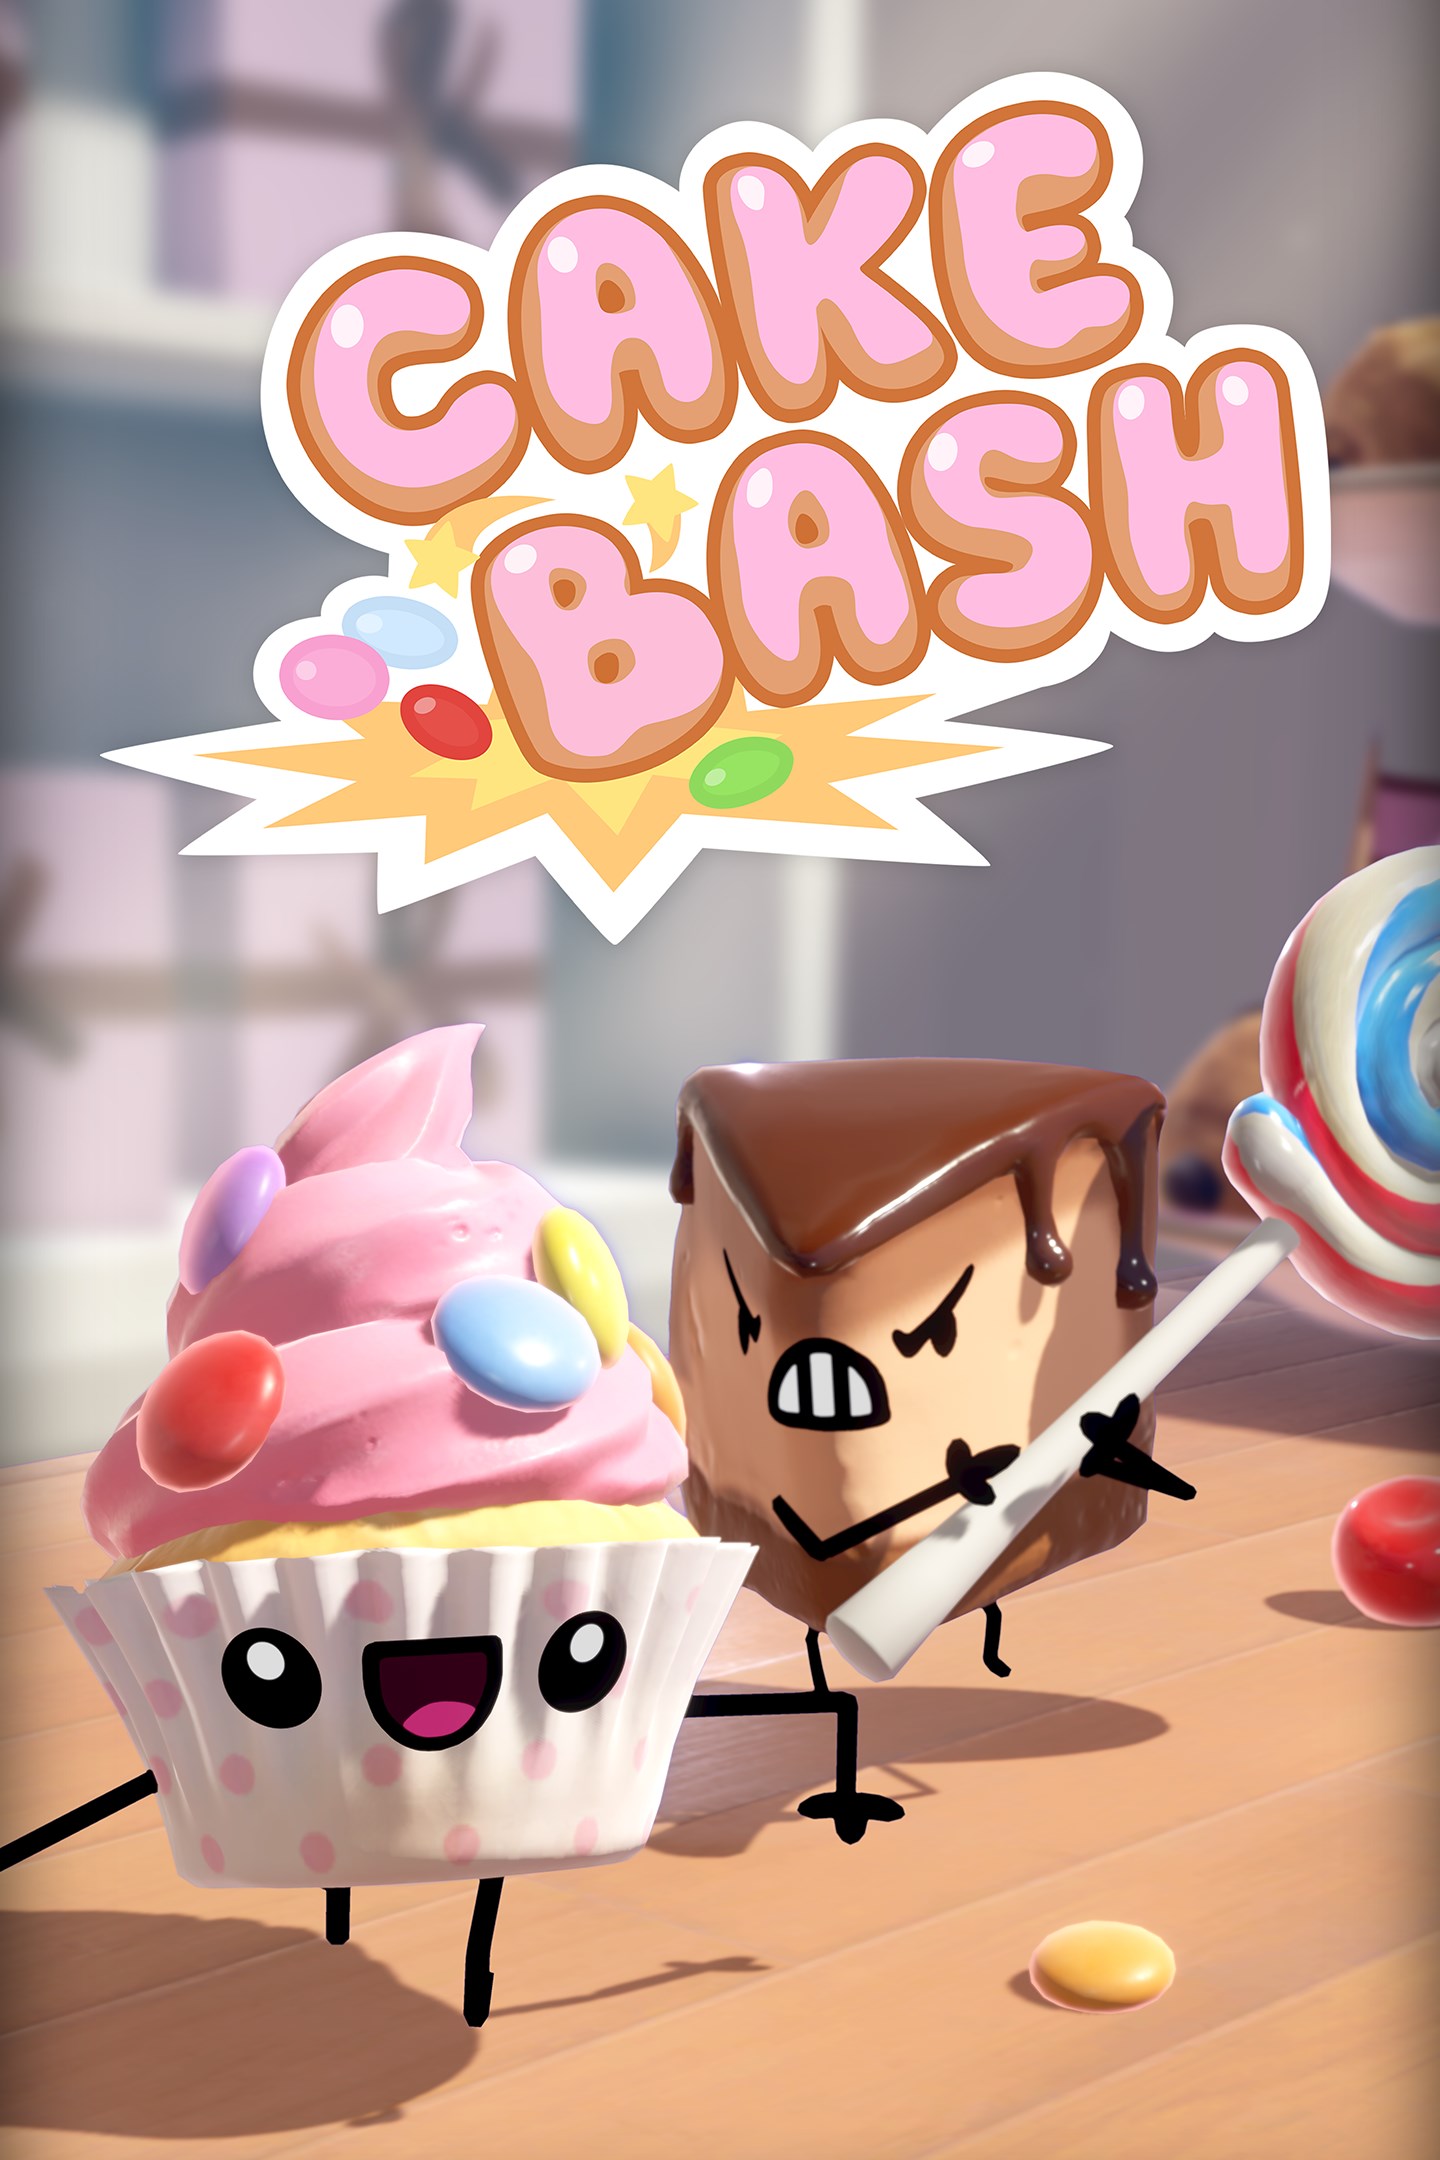 Conoce los pasteles de Cake Bash, que llegarán a Xbox One el 15 de octubre